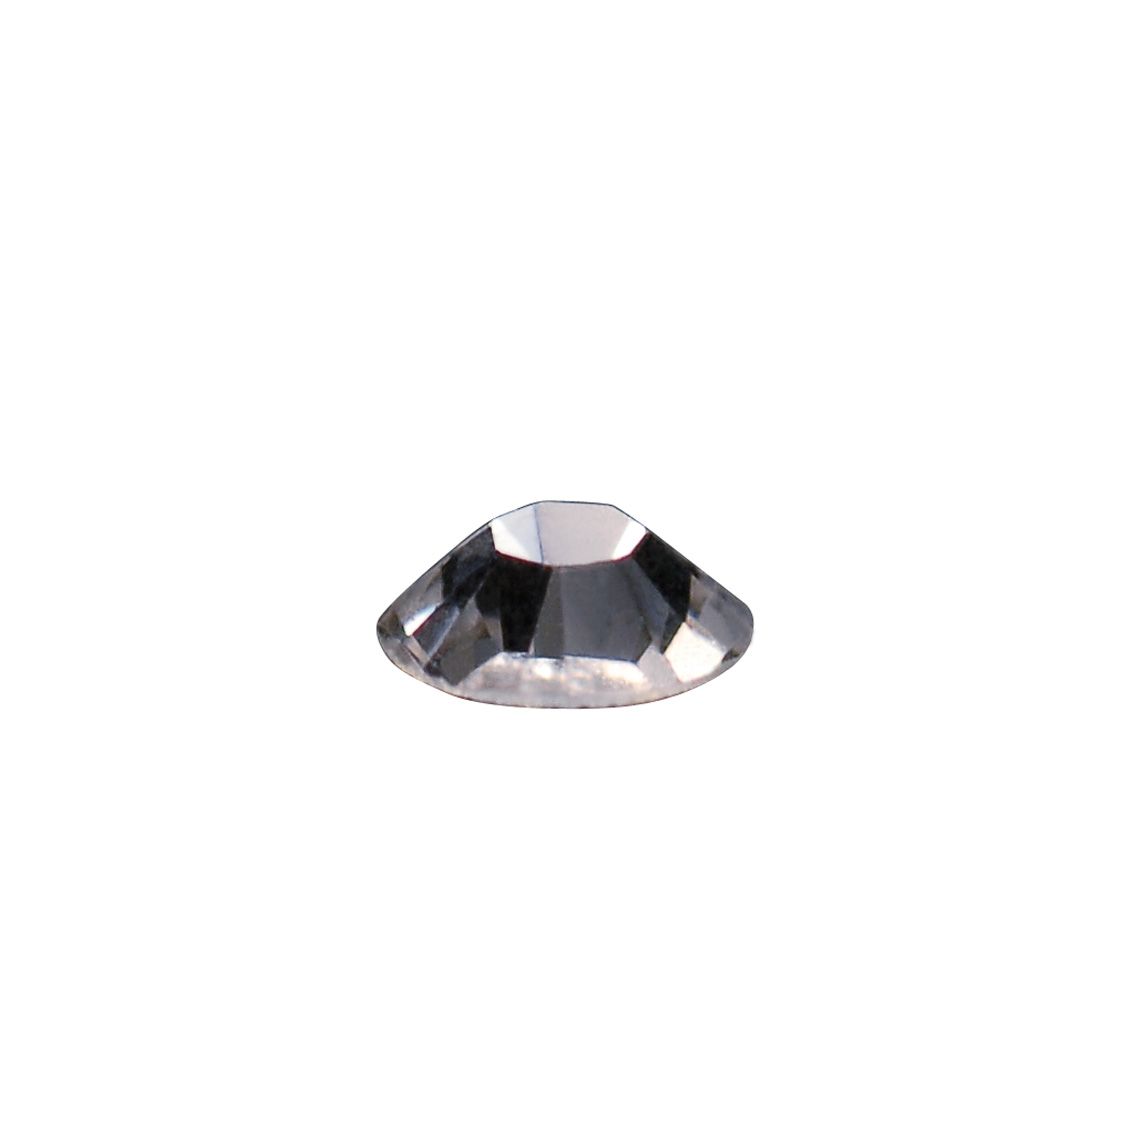 Cristalli Swarovski® per Nail Art Crystal misura SS6 1440 pz